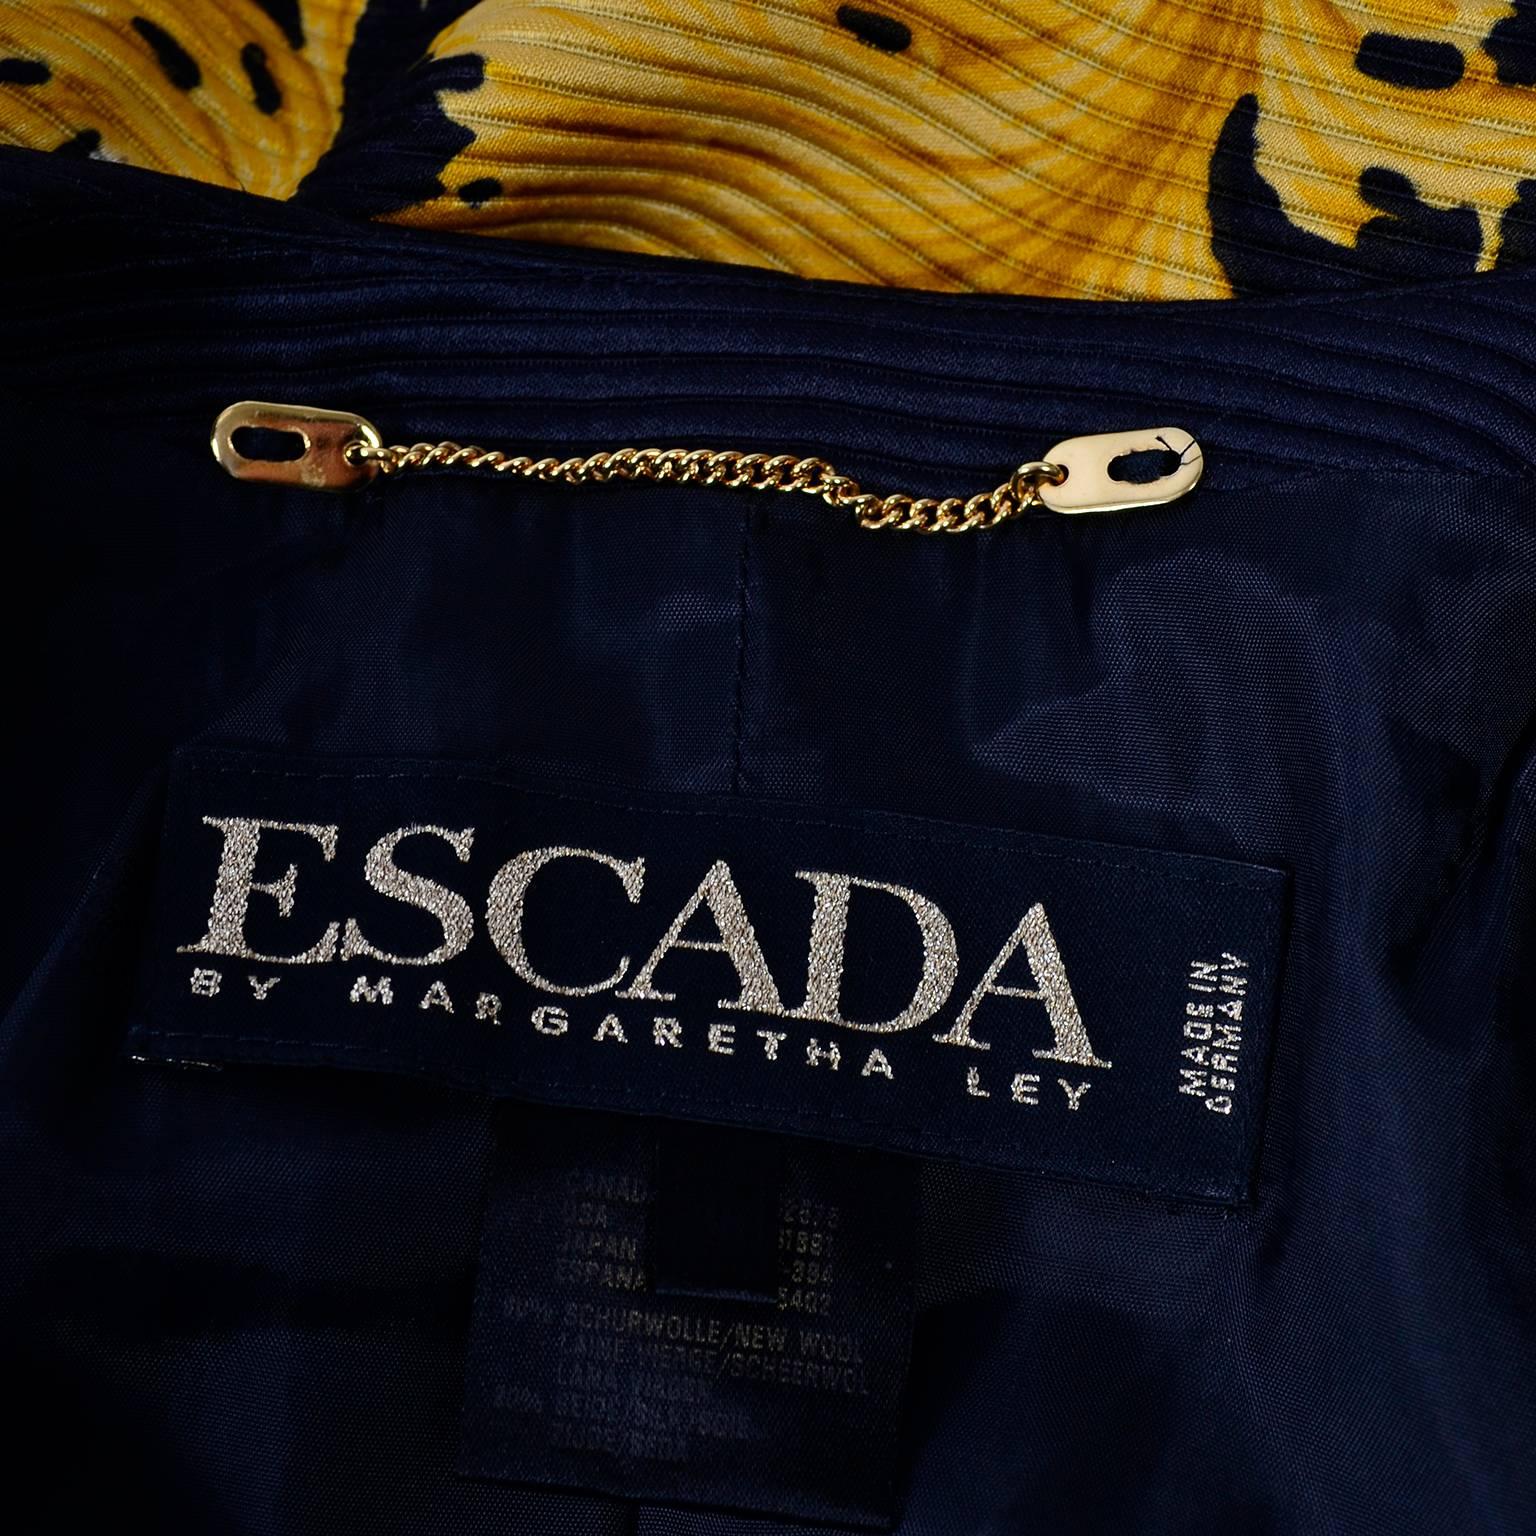 Escada Silk Blazer in Black & Gold Baroque Lion Animal Print by Margaretha Ley 4